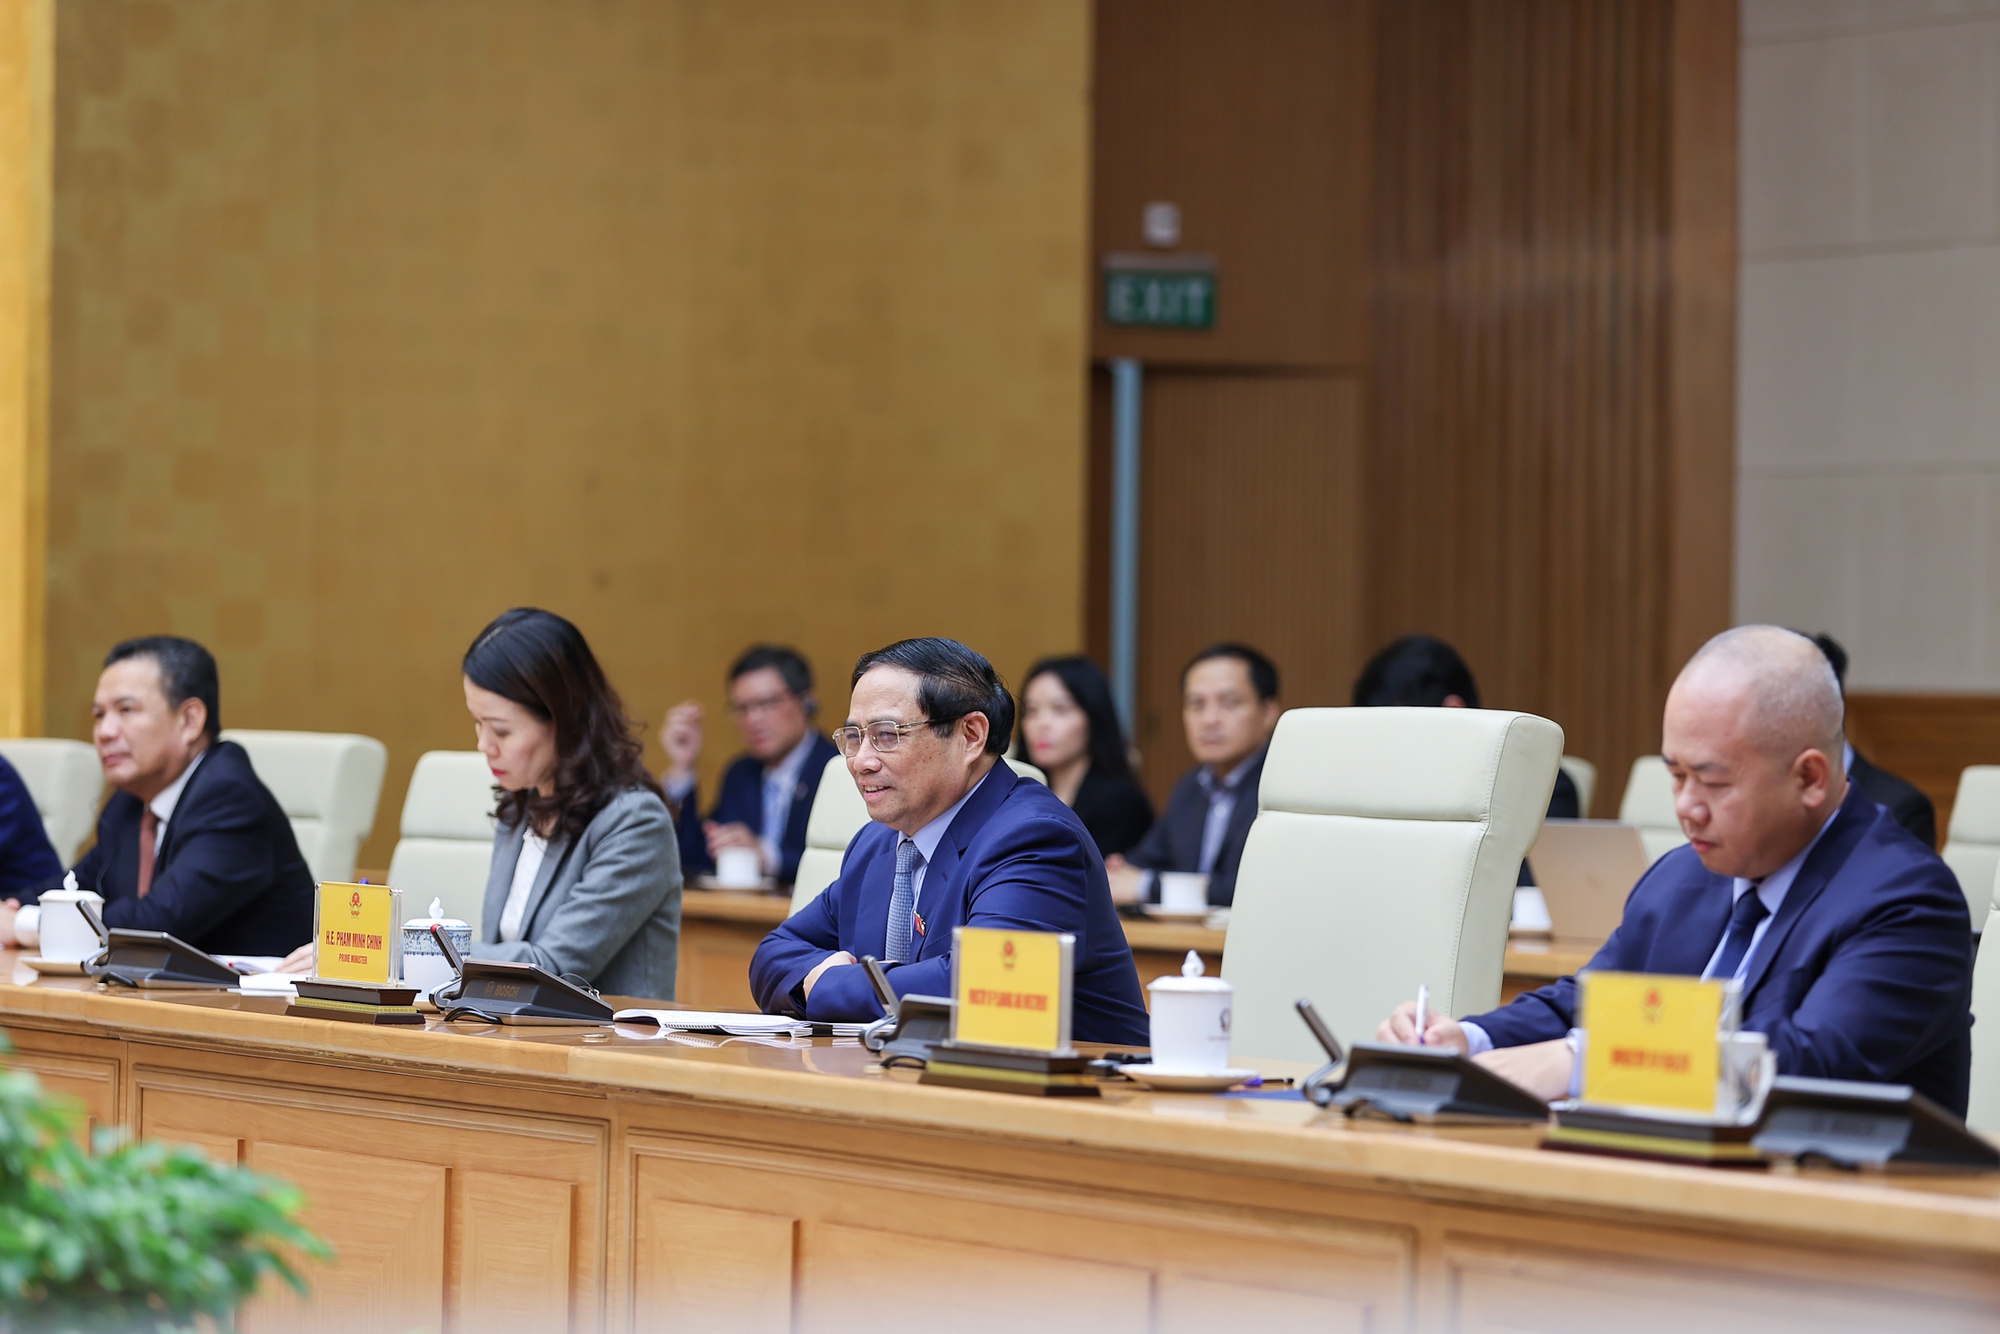 Thủ tướng nêu rõ, Chính phủ sẽ tiếp tục thúc đẩy và tạo điều kiện tốt nhất có thể để triển khai hiệu quả các chương trình, dự án hợp tác của LHQ dành cho Việt Nam - Ảnh: VGP/Nhật Bắc